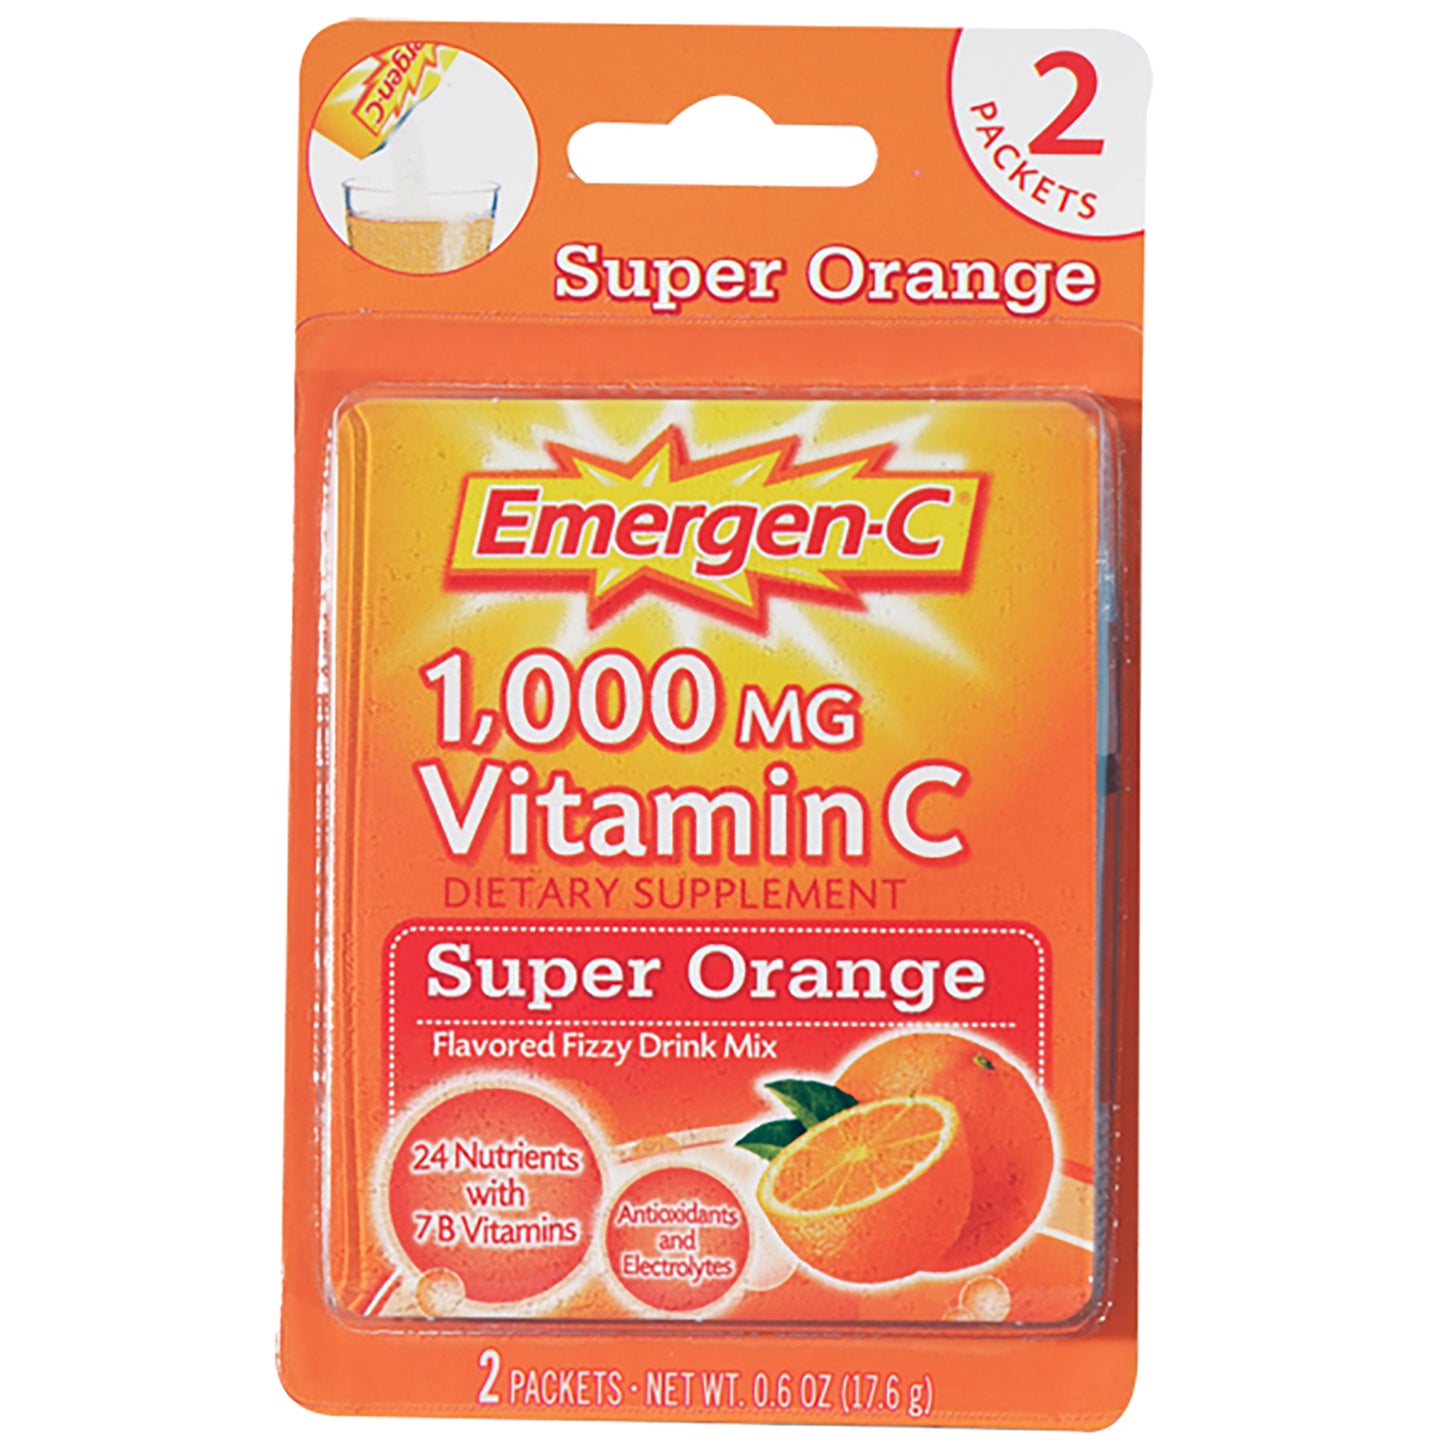 EMERGEN-C SUPER ORANGE